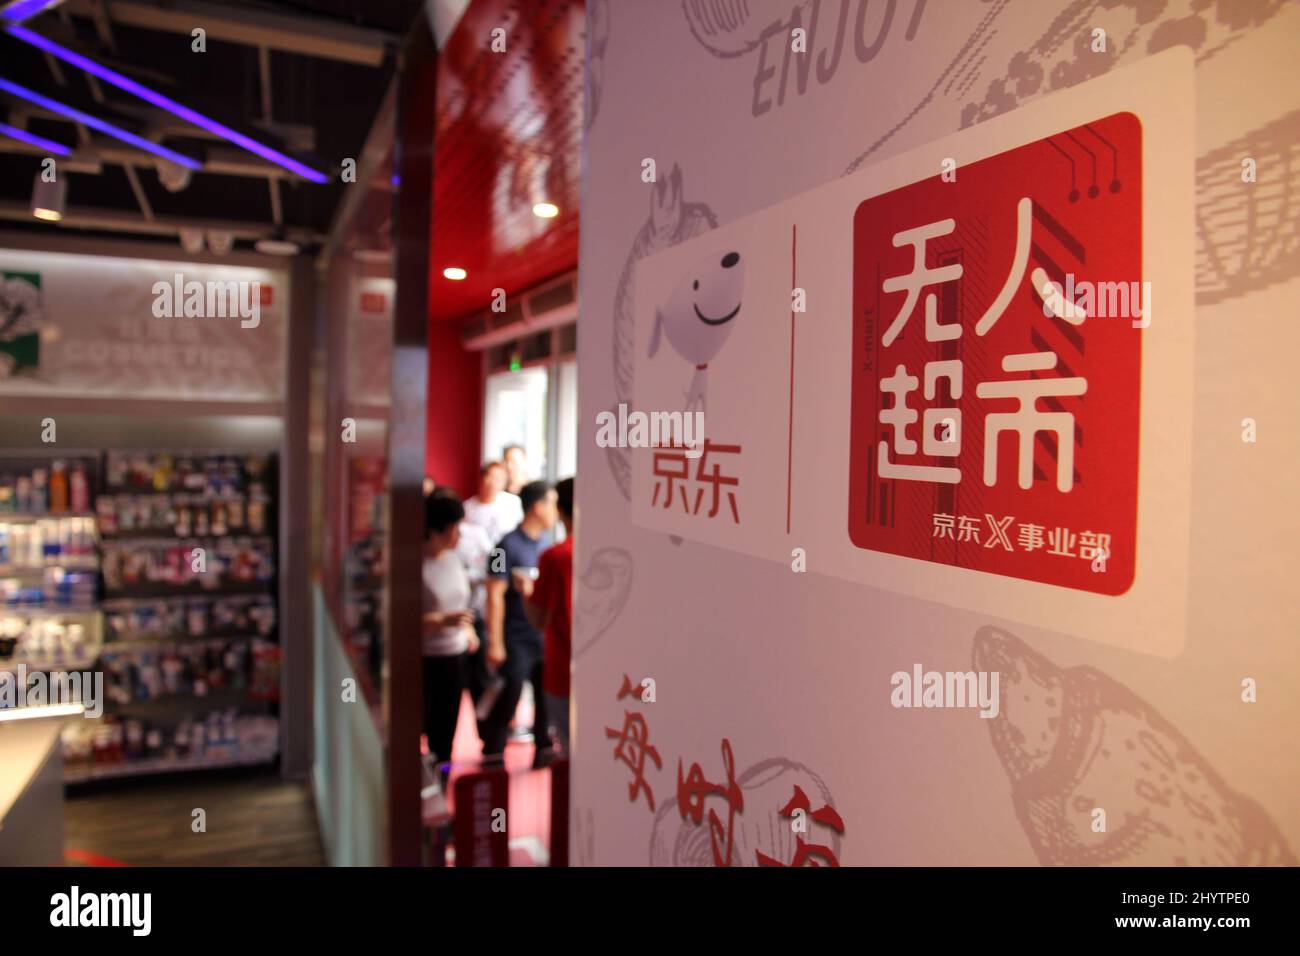 XIONG'AN, CHINA - 14. SEPTEMBER 2018 - Besucher stehen vor der Schlange, um ein neues Einkaufserlebnis in einem unbemannten Supermarkt aus dem Jahr JD.com in der Xiongan Civic Ser auszuprobieren Stockfoto